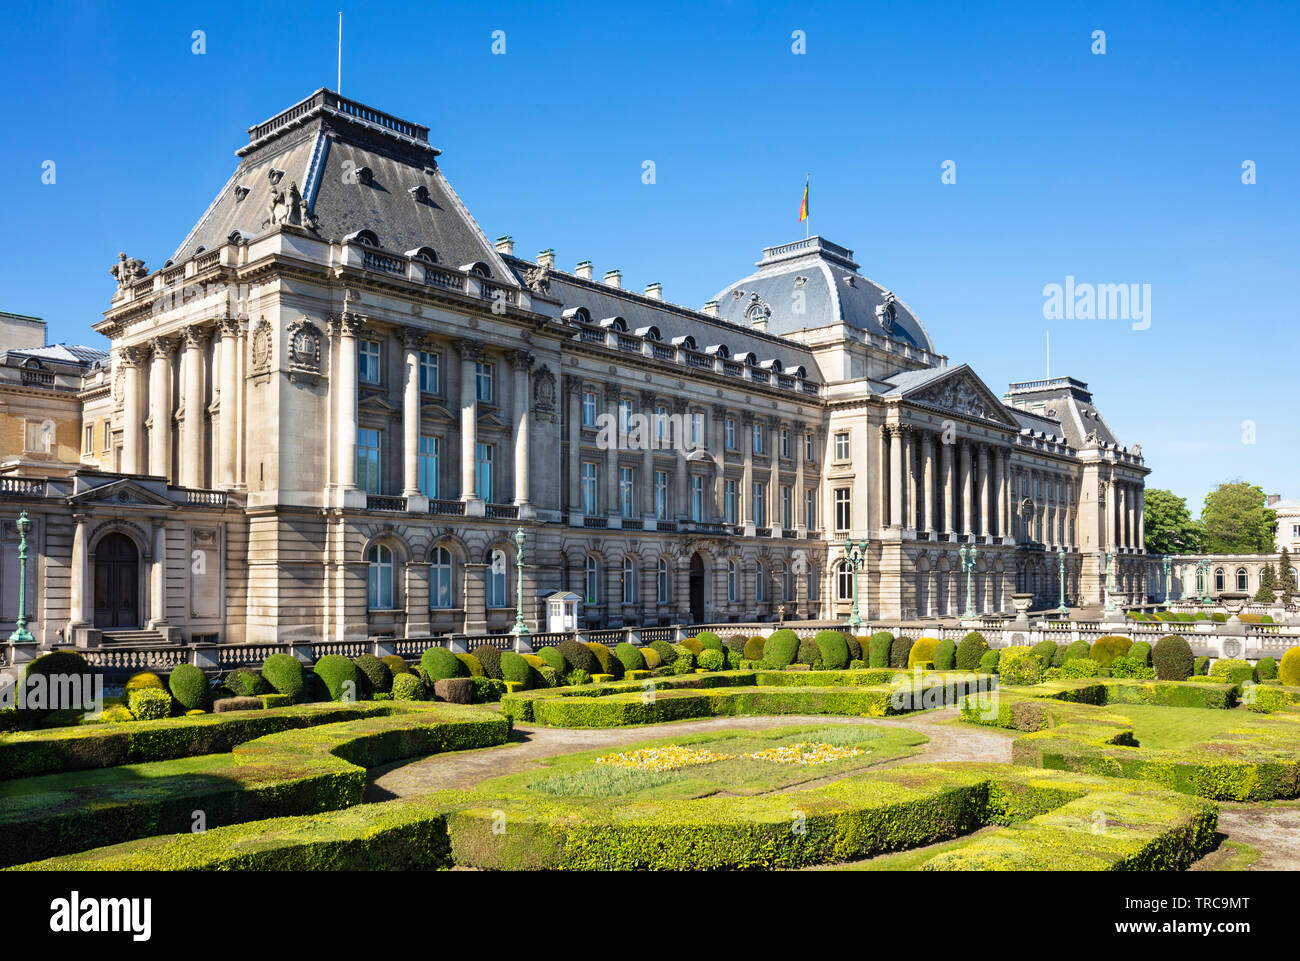 Palais royale Bruxelles Palais du Roi le roi de la résidence officielle de la Place des Palais Rue Brederode Bruxelles Belgique eu Europe Banque D'Images